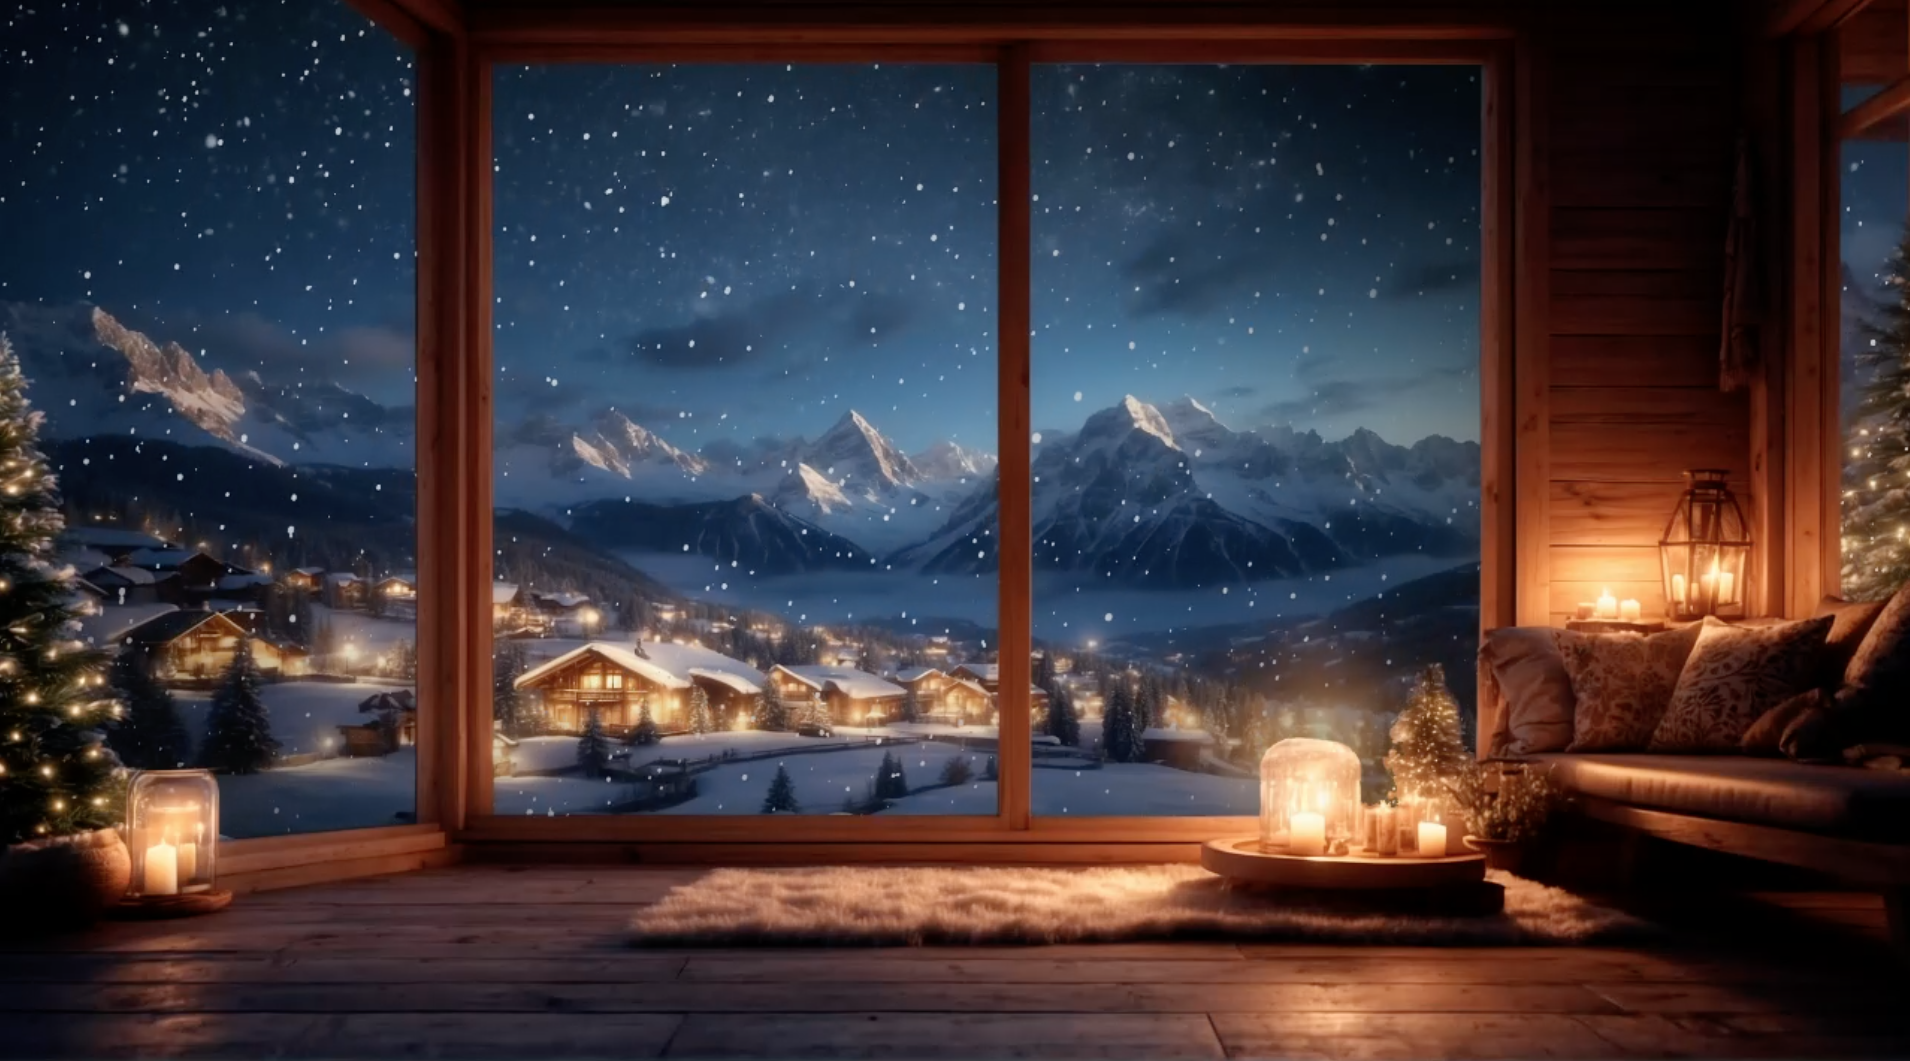 Stemingen fra en hyggelig bjælkehytte med udsigt over Østrigske sneklædte bjerge, mens sneen daler udenfor, der er mørkt, men lyset fra husene lyser op. Stuen er hyggelig med juletræ og levende lys – og de store vinduer viser de smukke omgivelser. Brugt til baggrunden på videoen, med Pomodoro 25/5 timer med piano musik i baggrunden – 25 min. arbejde og 5 minutters pause. Kan også bruges af dig.